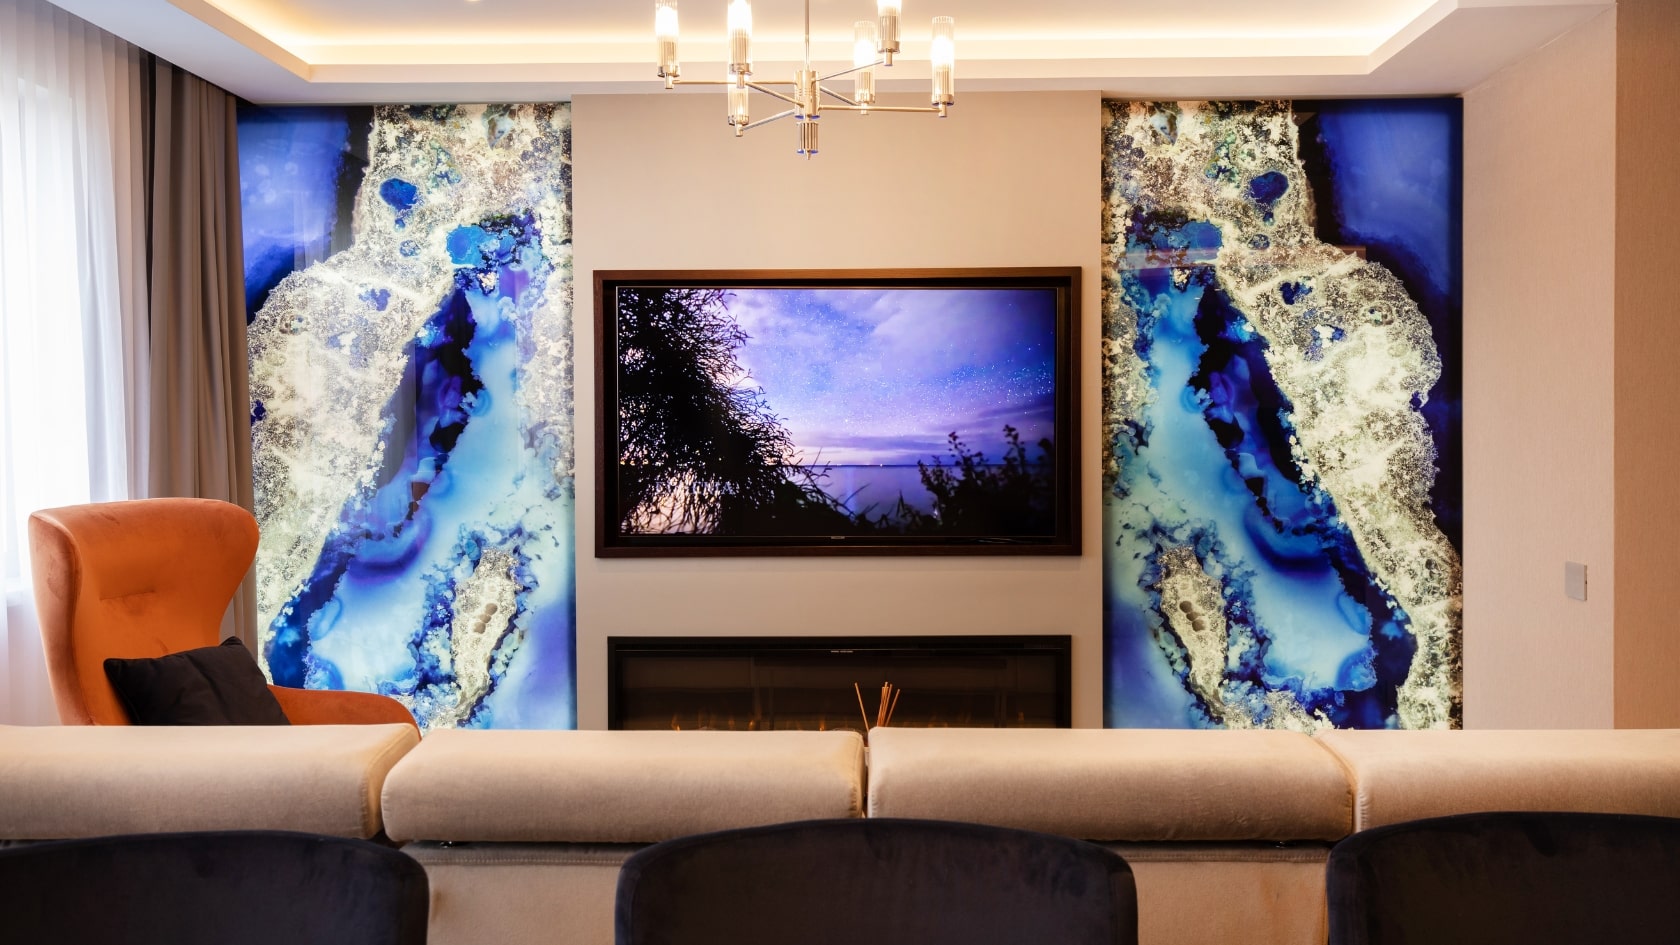 Living amenajat in stil modern, cu un televizor pe perete si doua placi de marmura albastra.